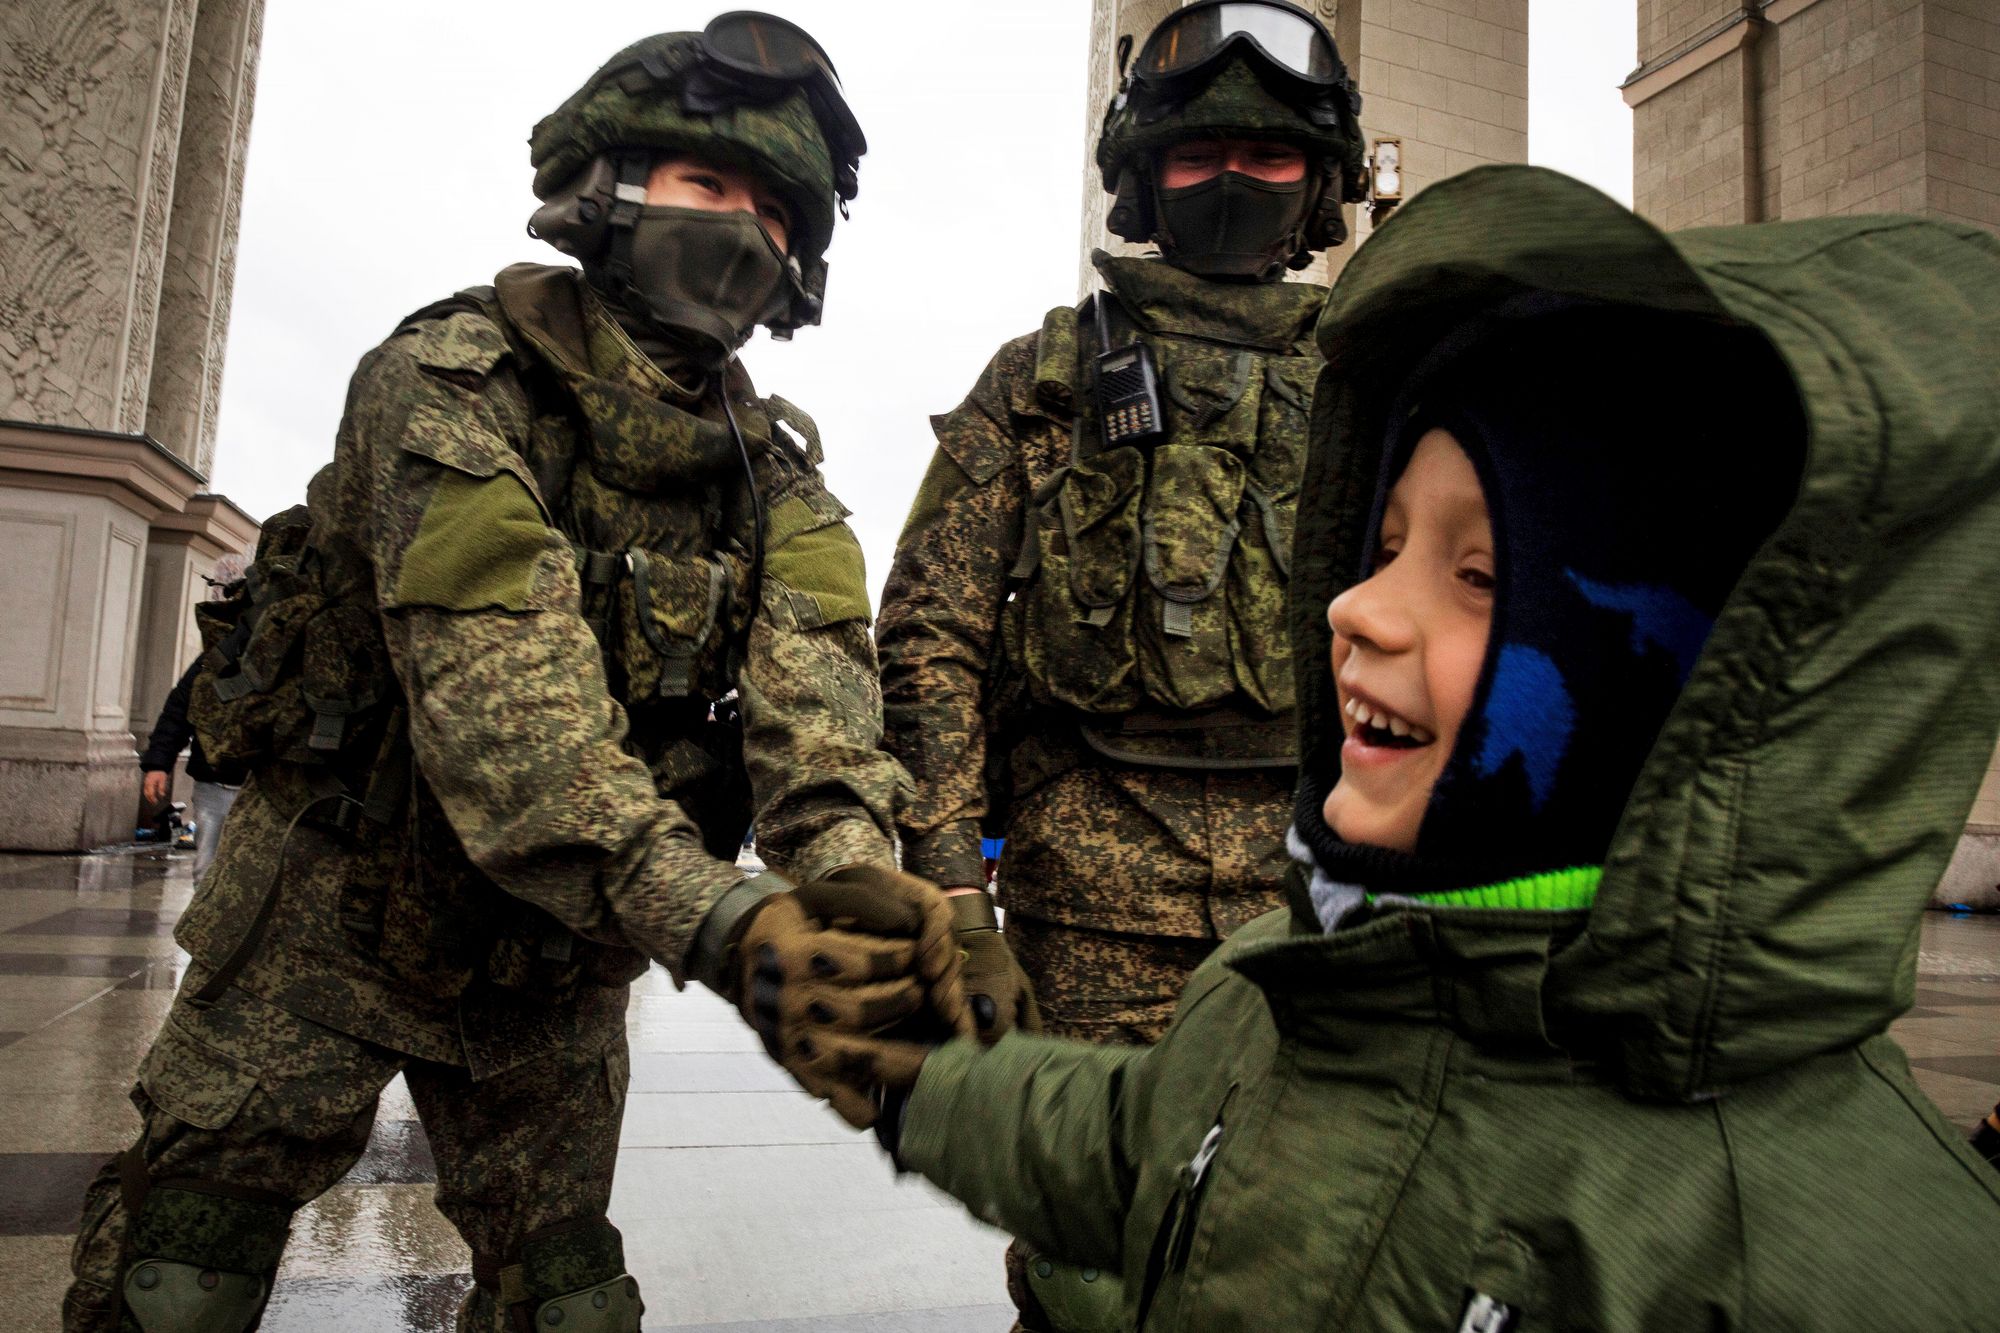 Viranomaiset varoittavat, että miehittäjä yrittää saada asukkaat osallistumaan esimerkiksi propagandakuviin. Etenkin lapsia on varjeltava vieraan vallan sotilailta. © Nikolay Vinokurov / Alamy Stock Photo